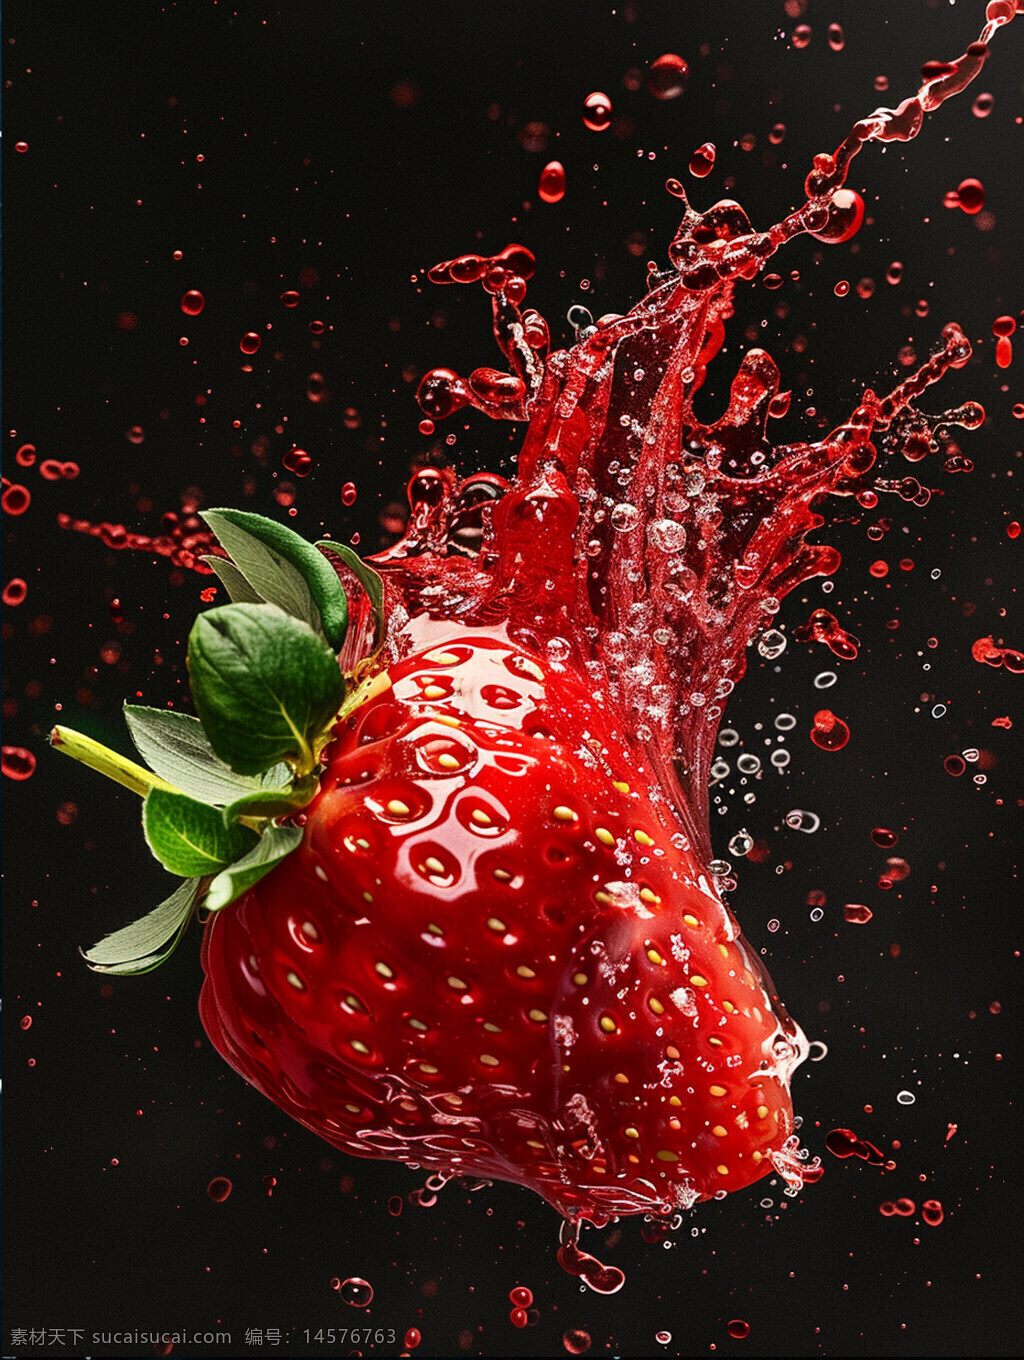 液体爆炸 草莓 商业摄影 精致 摄影 生物世界 水果